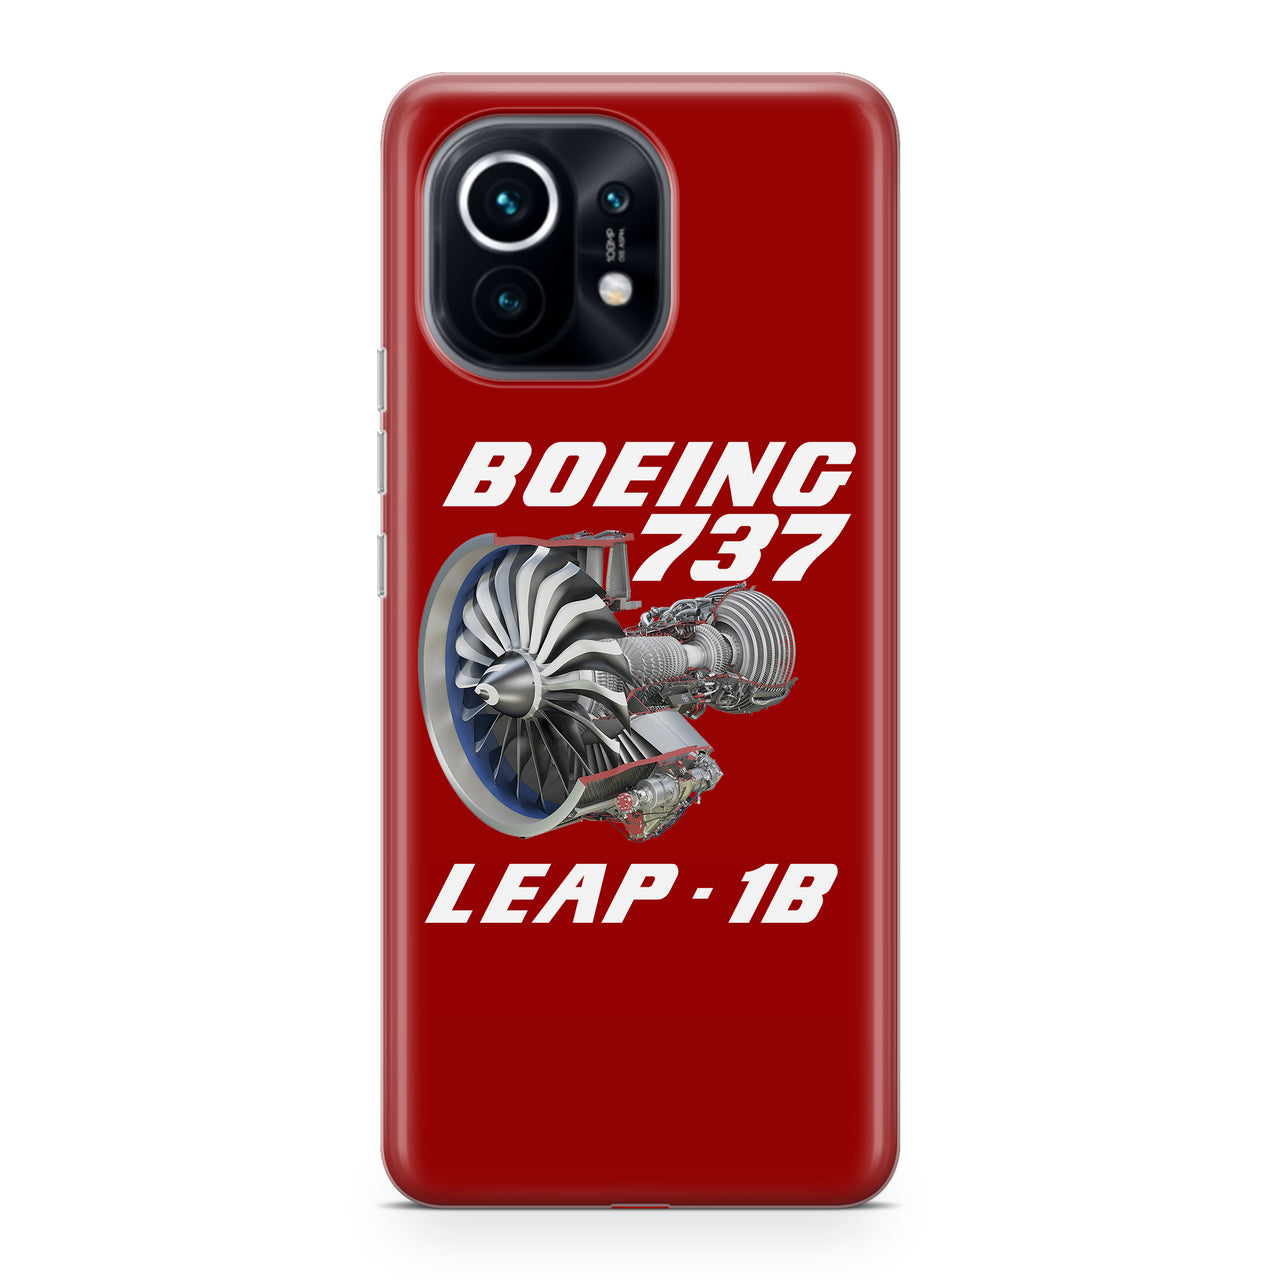 Boeing 737 & Leap 1B Designed Xiaomi Cases